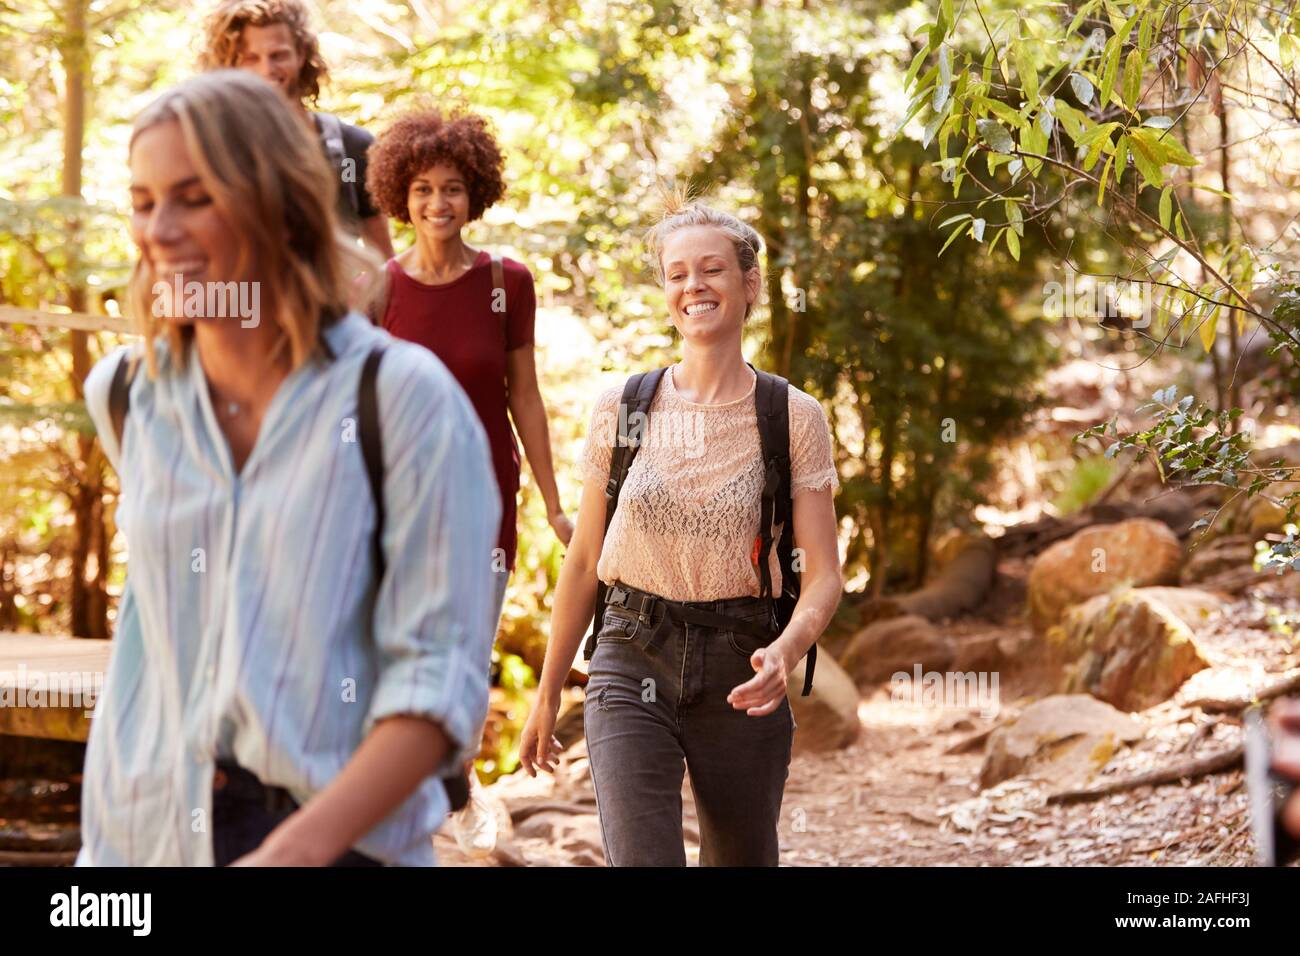 Smiling copines millénaire marcher ensemble au cours d'une randonnée dans une forêt, Close up Banque D'Images